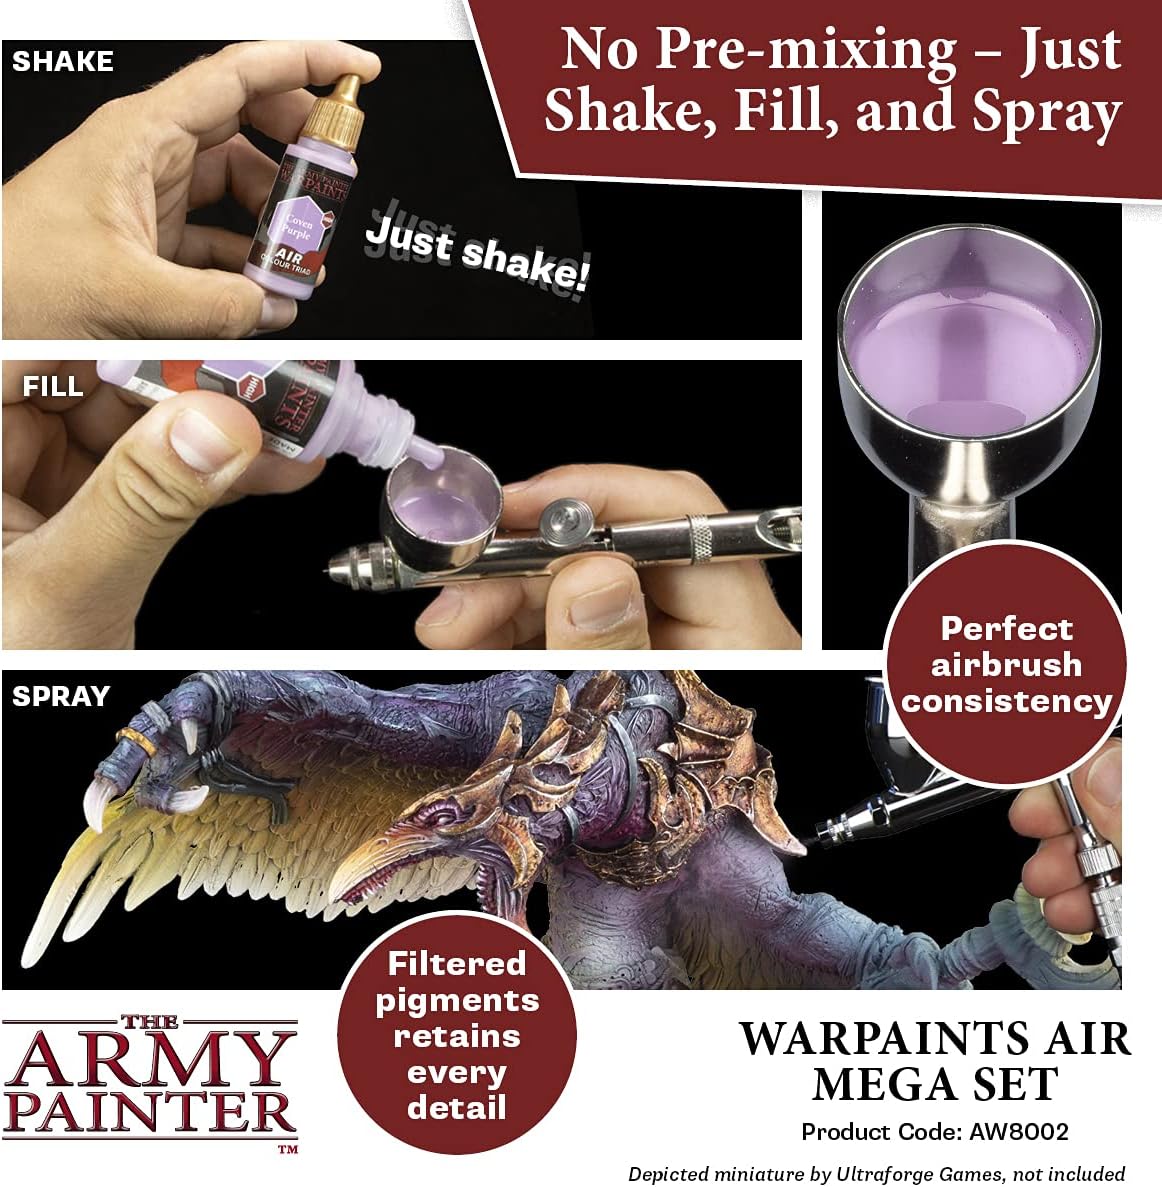 The Army Painter Warpaints Air Mega Set